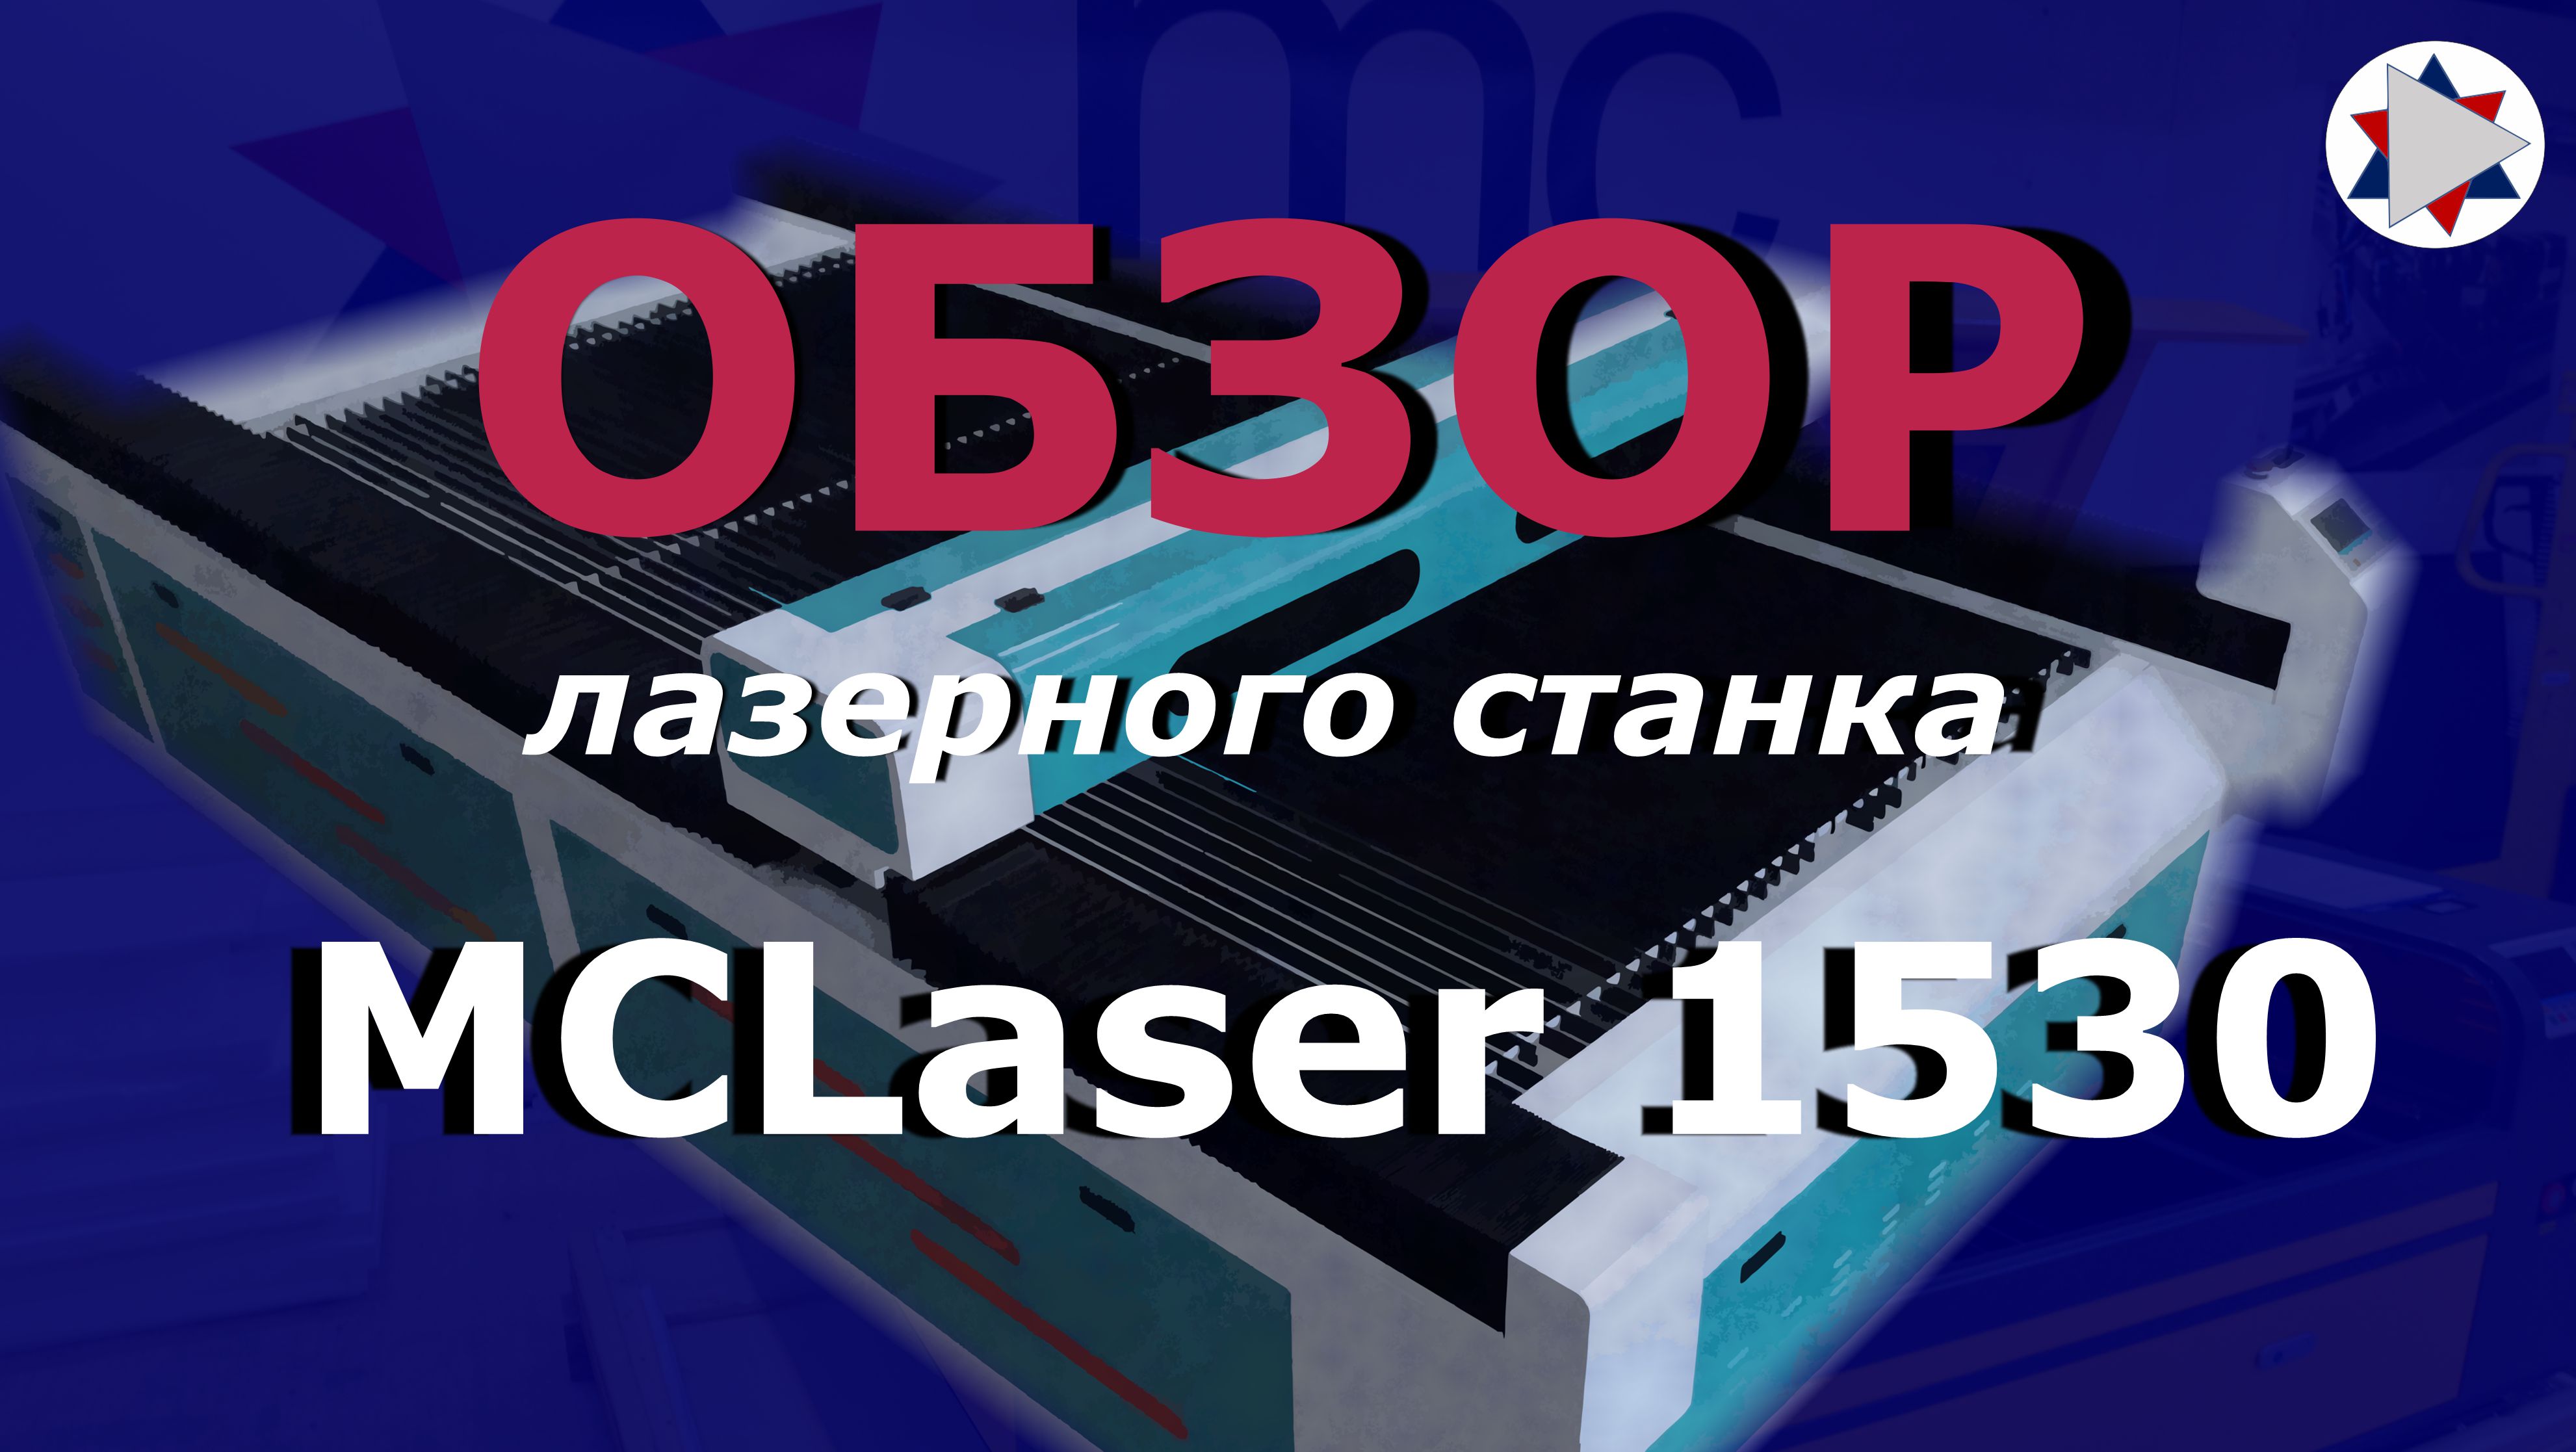 ✅ Обзор лазерного станка MCLaser 1530